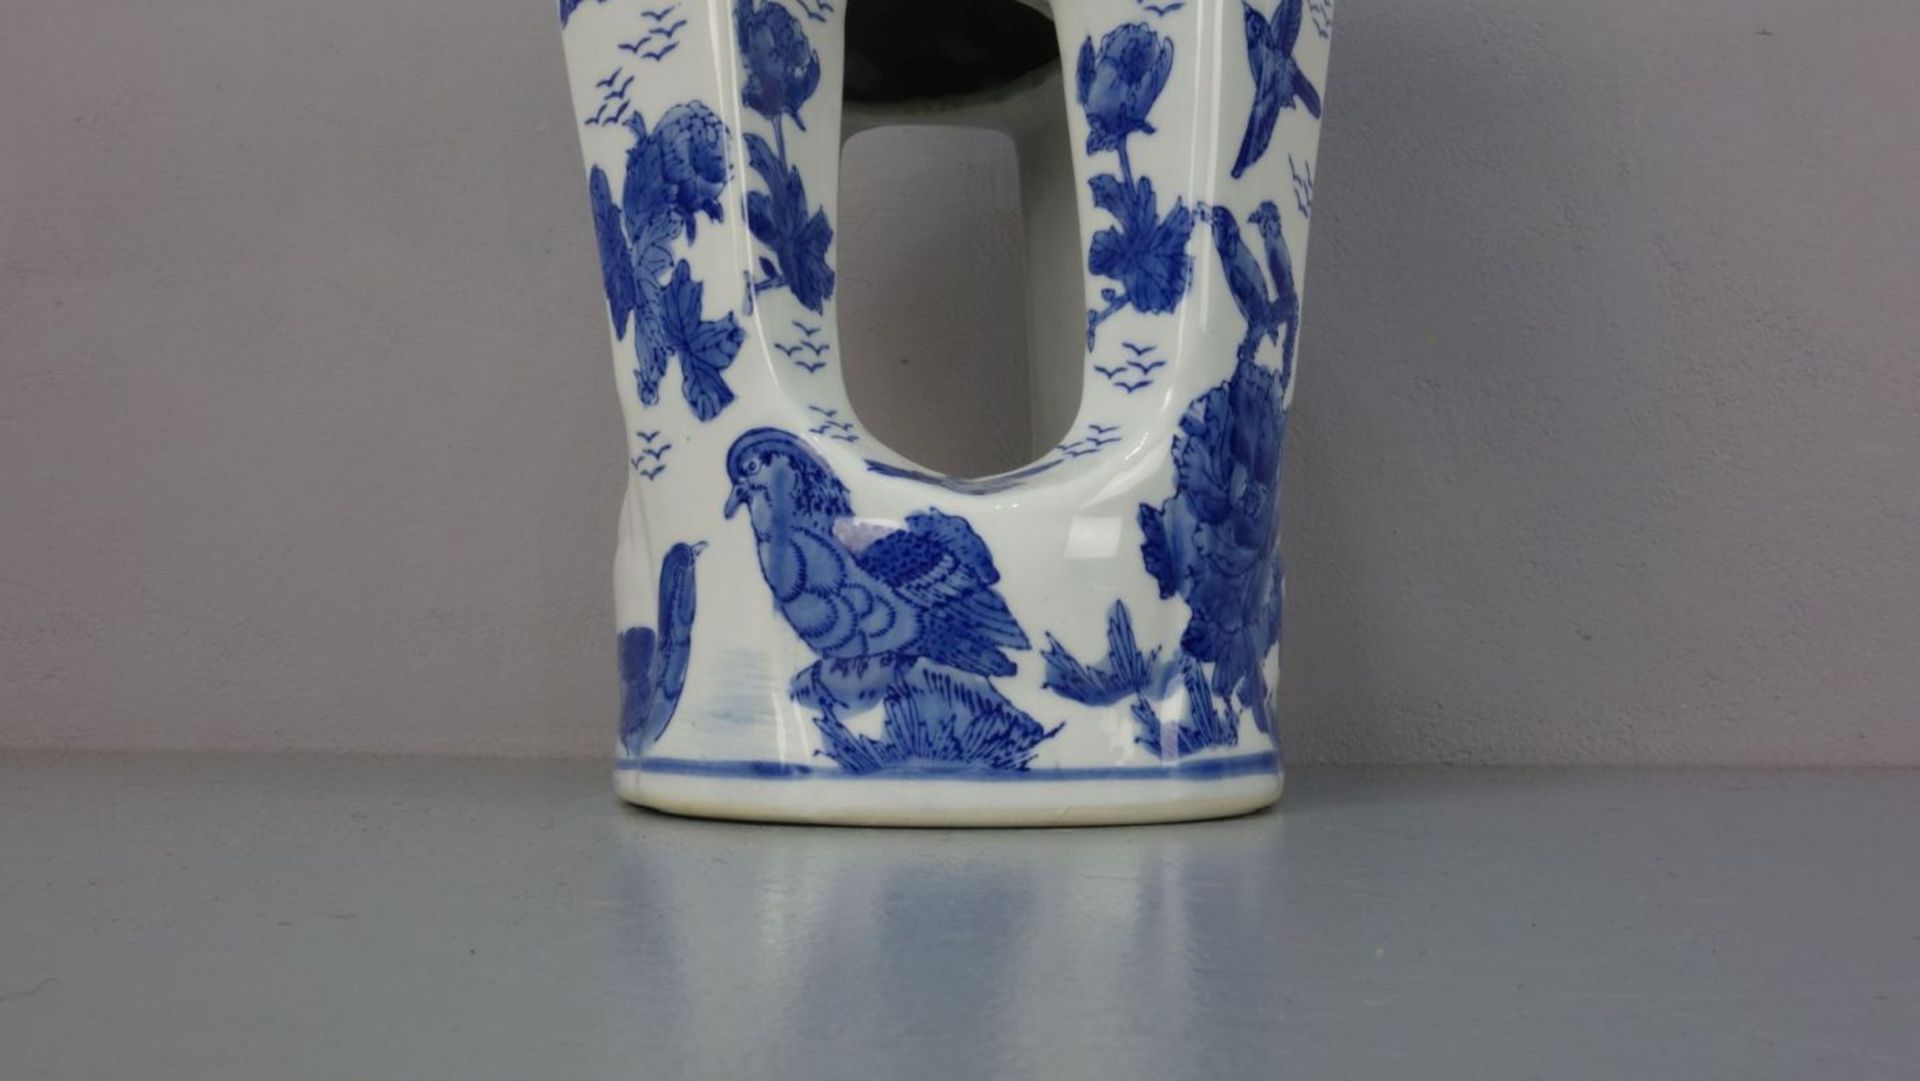 CHINESISCHER HOCKER / stool, Porzellan mit Blaumalerei (ungemarkt), 2. Hälfte 20. Jh.; Rundstand, - Image 3 of 5